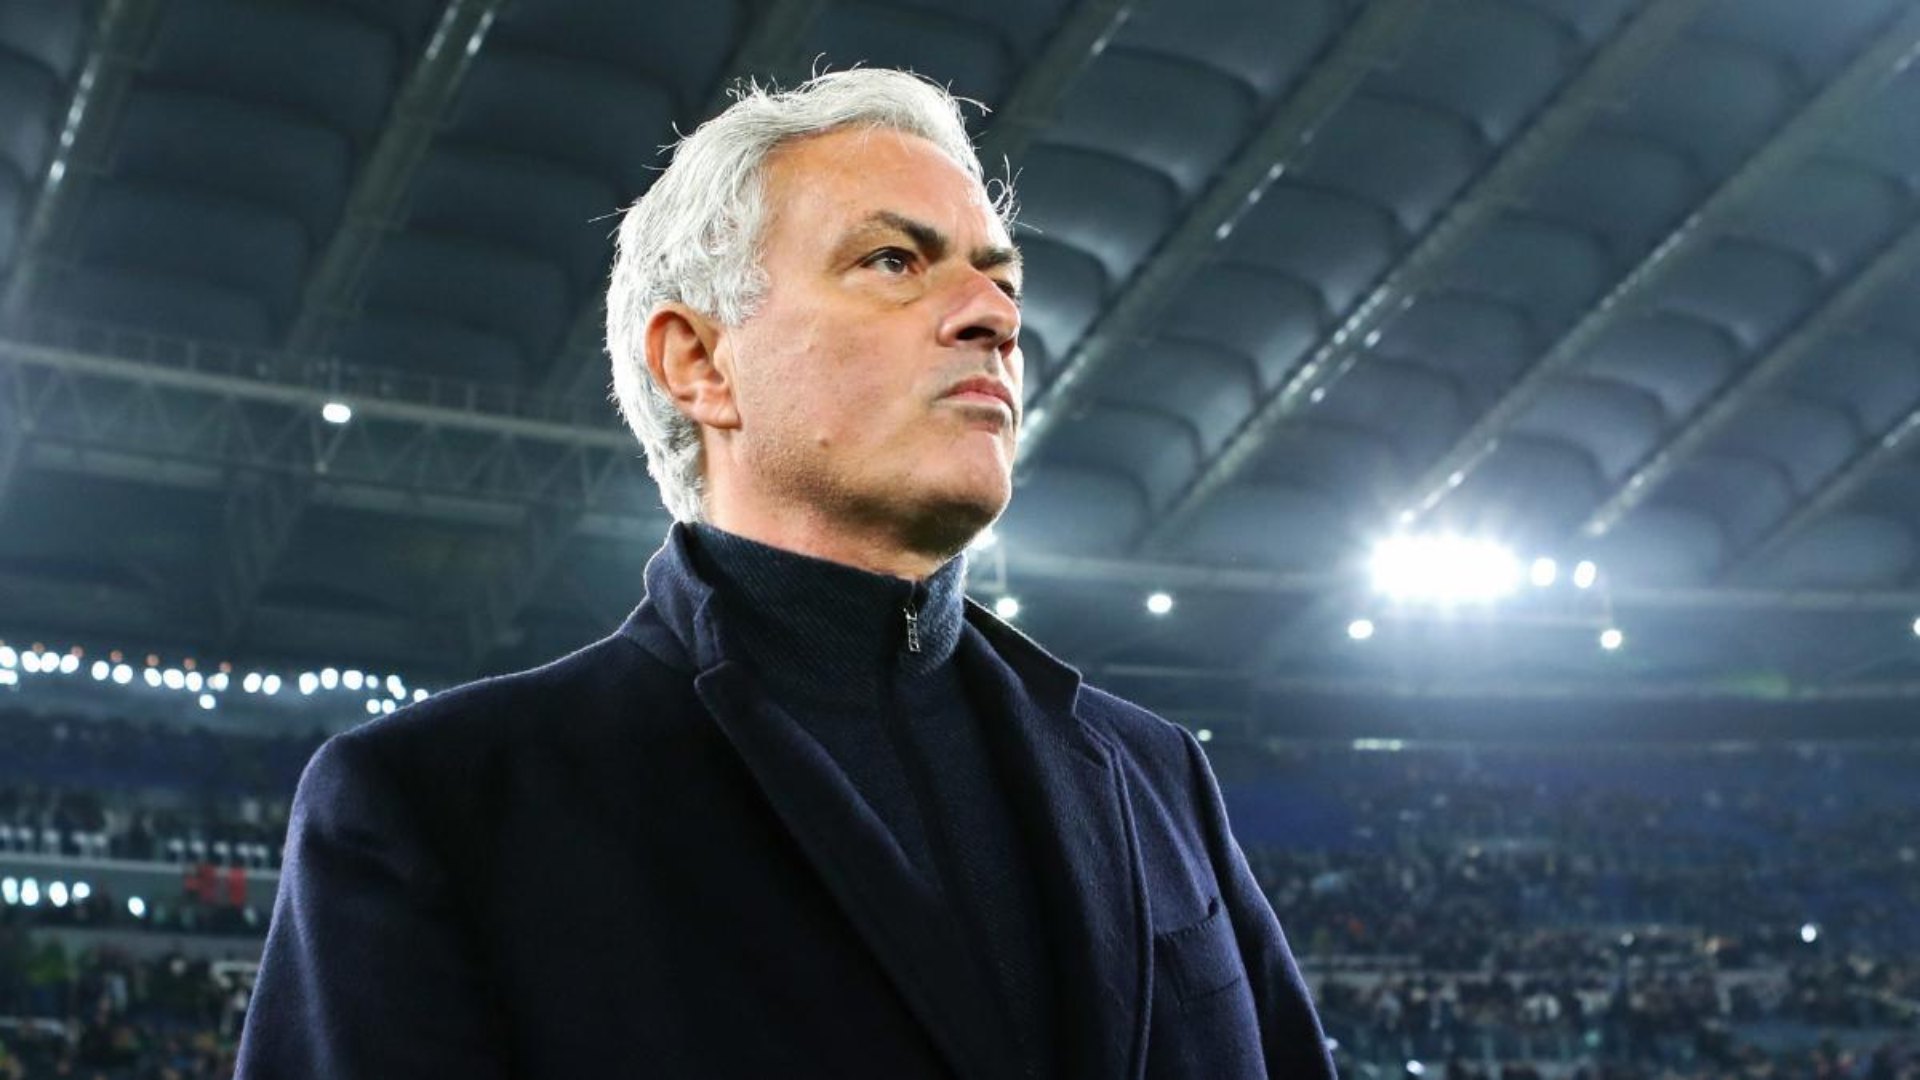 El reconocido entrenador portugués, José Mourinho, ha encontrado un nuevo destino en el mundo del fútbol tras su salida del AS Roma a principios de este año.